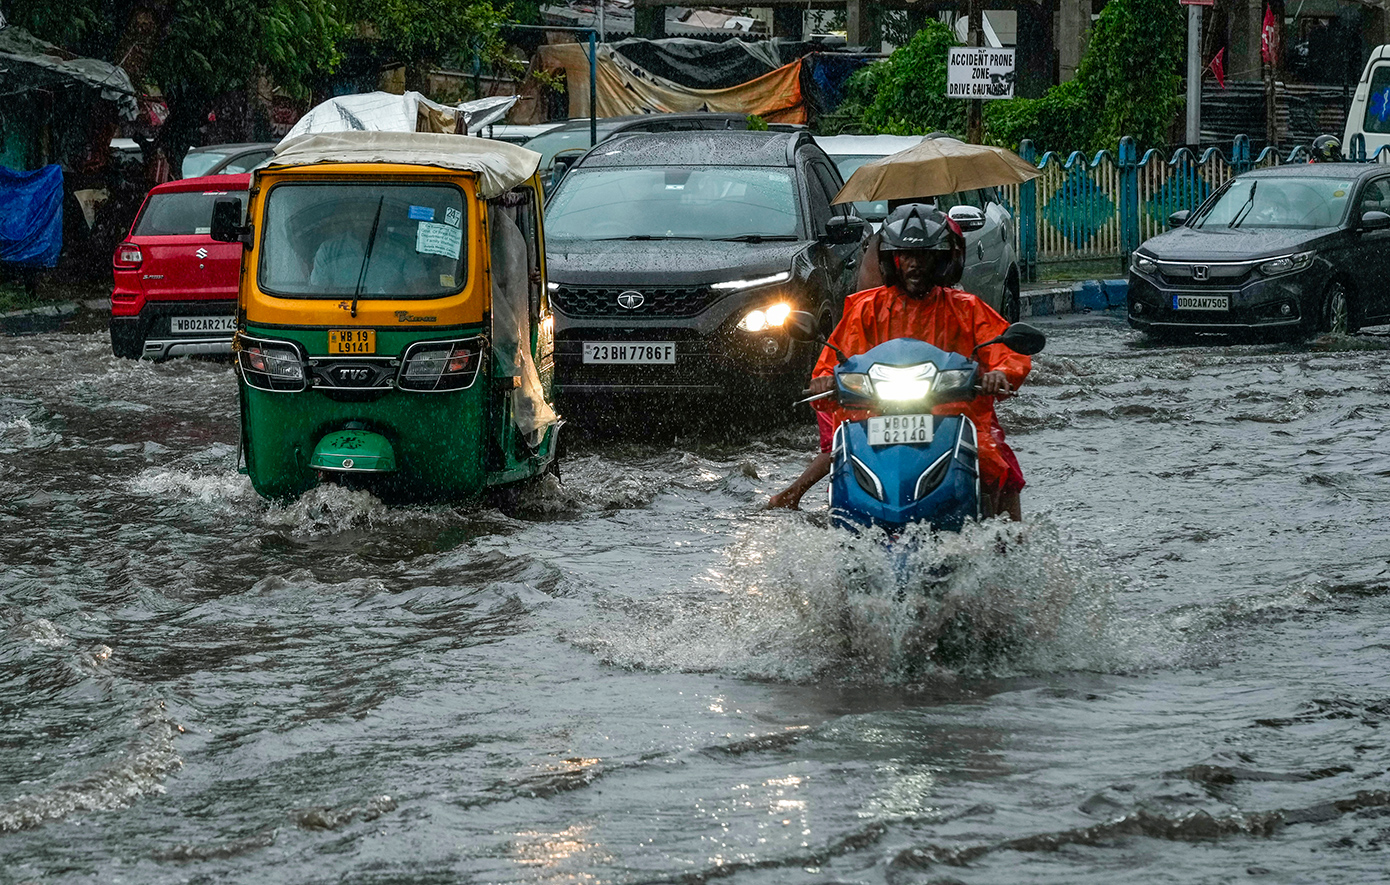 Τουλάχιστον 15 άνθρωποι σκοτώθηκαν και 7 εγκλωβίστηκαν σε κατάρρευση λατομείου στην Ινδία, από καταρρακτώδεις βροχές